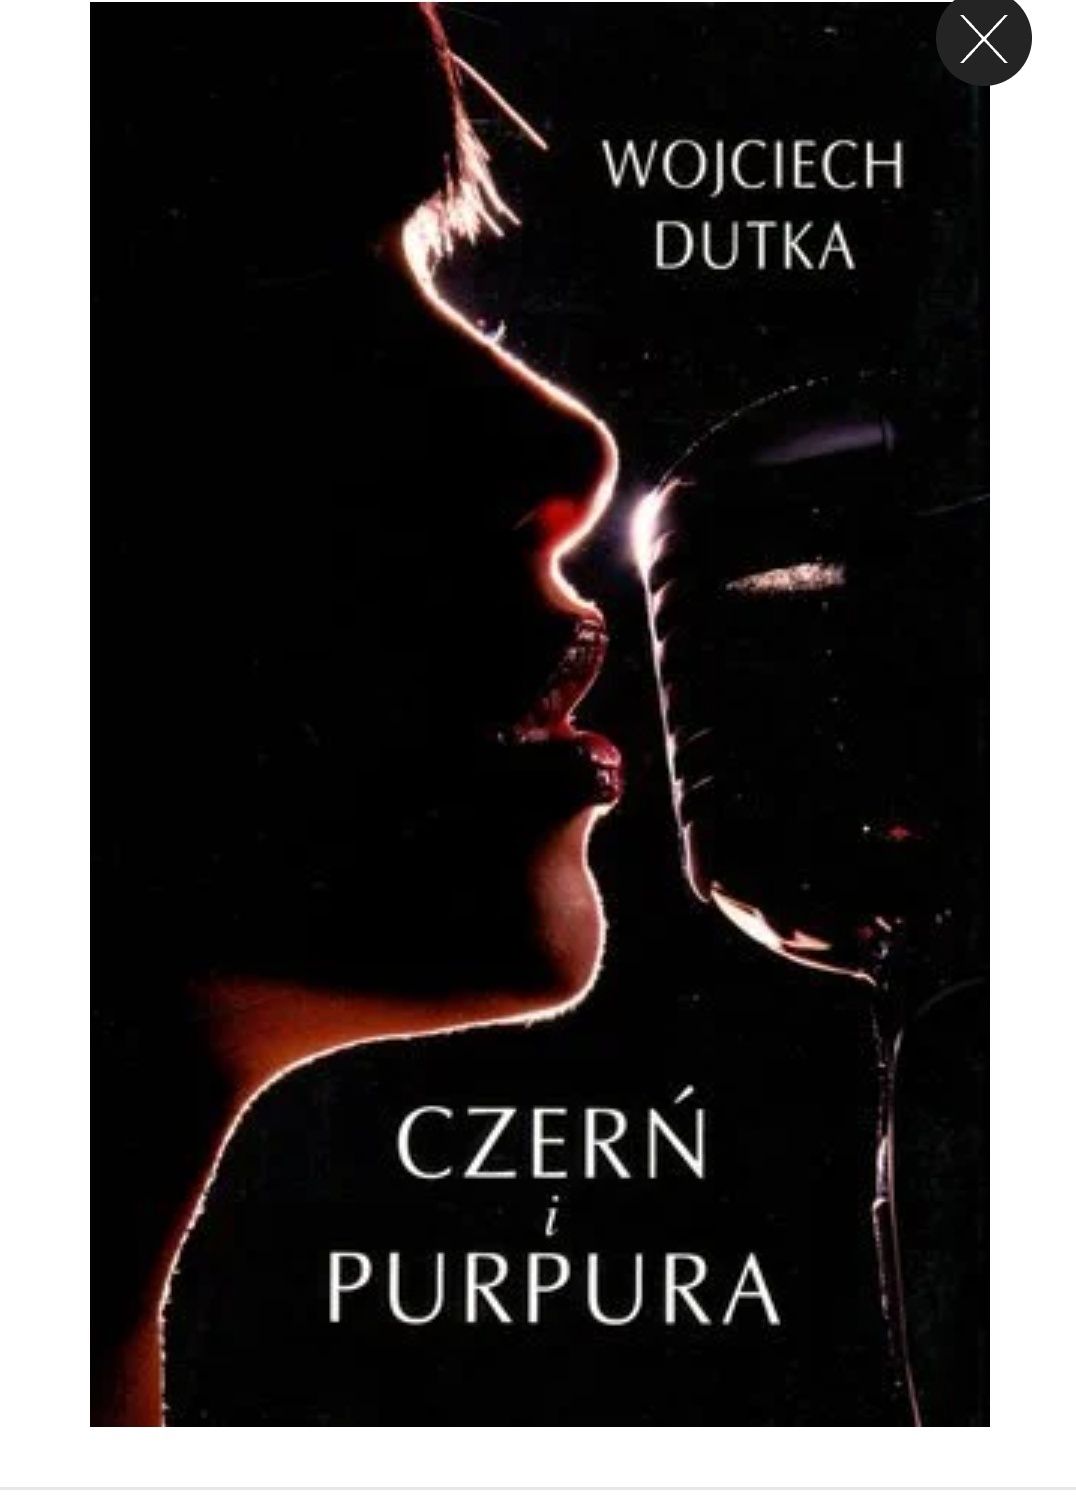 Książka "czerń i purpura" Wojciech DUTKA